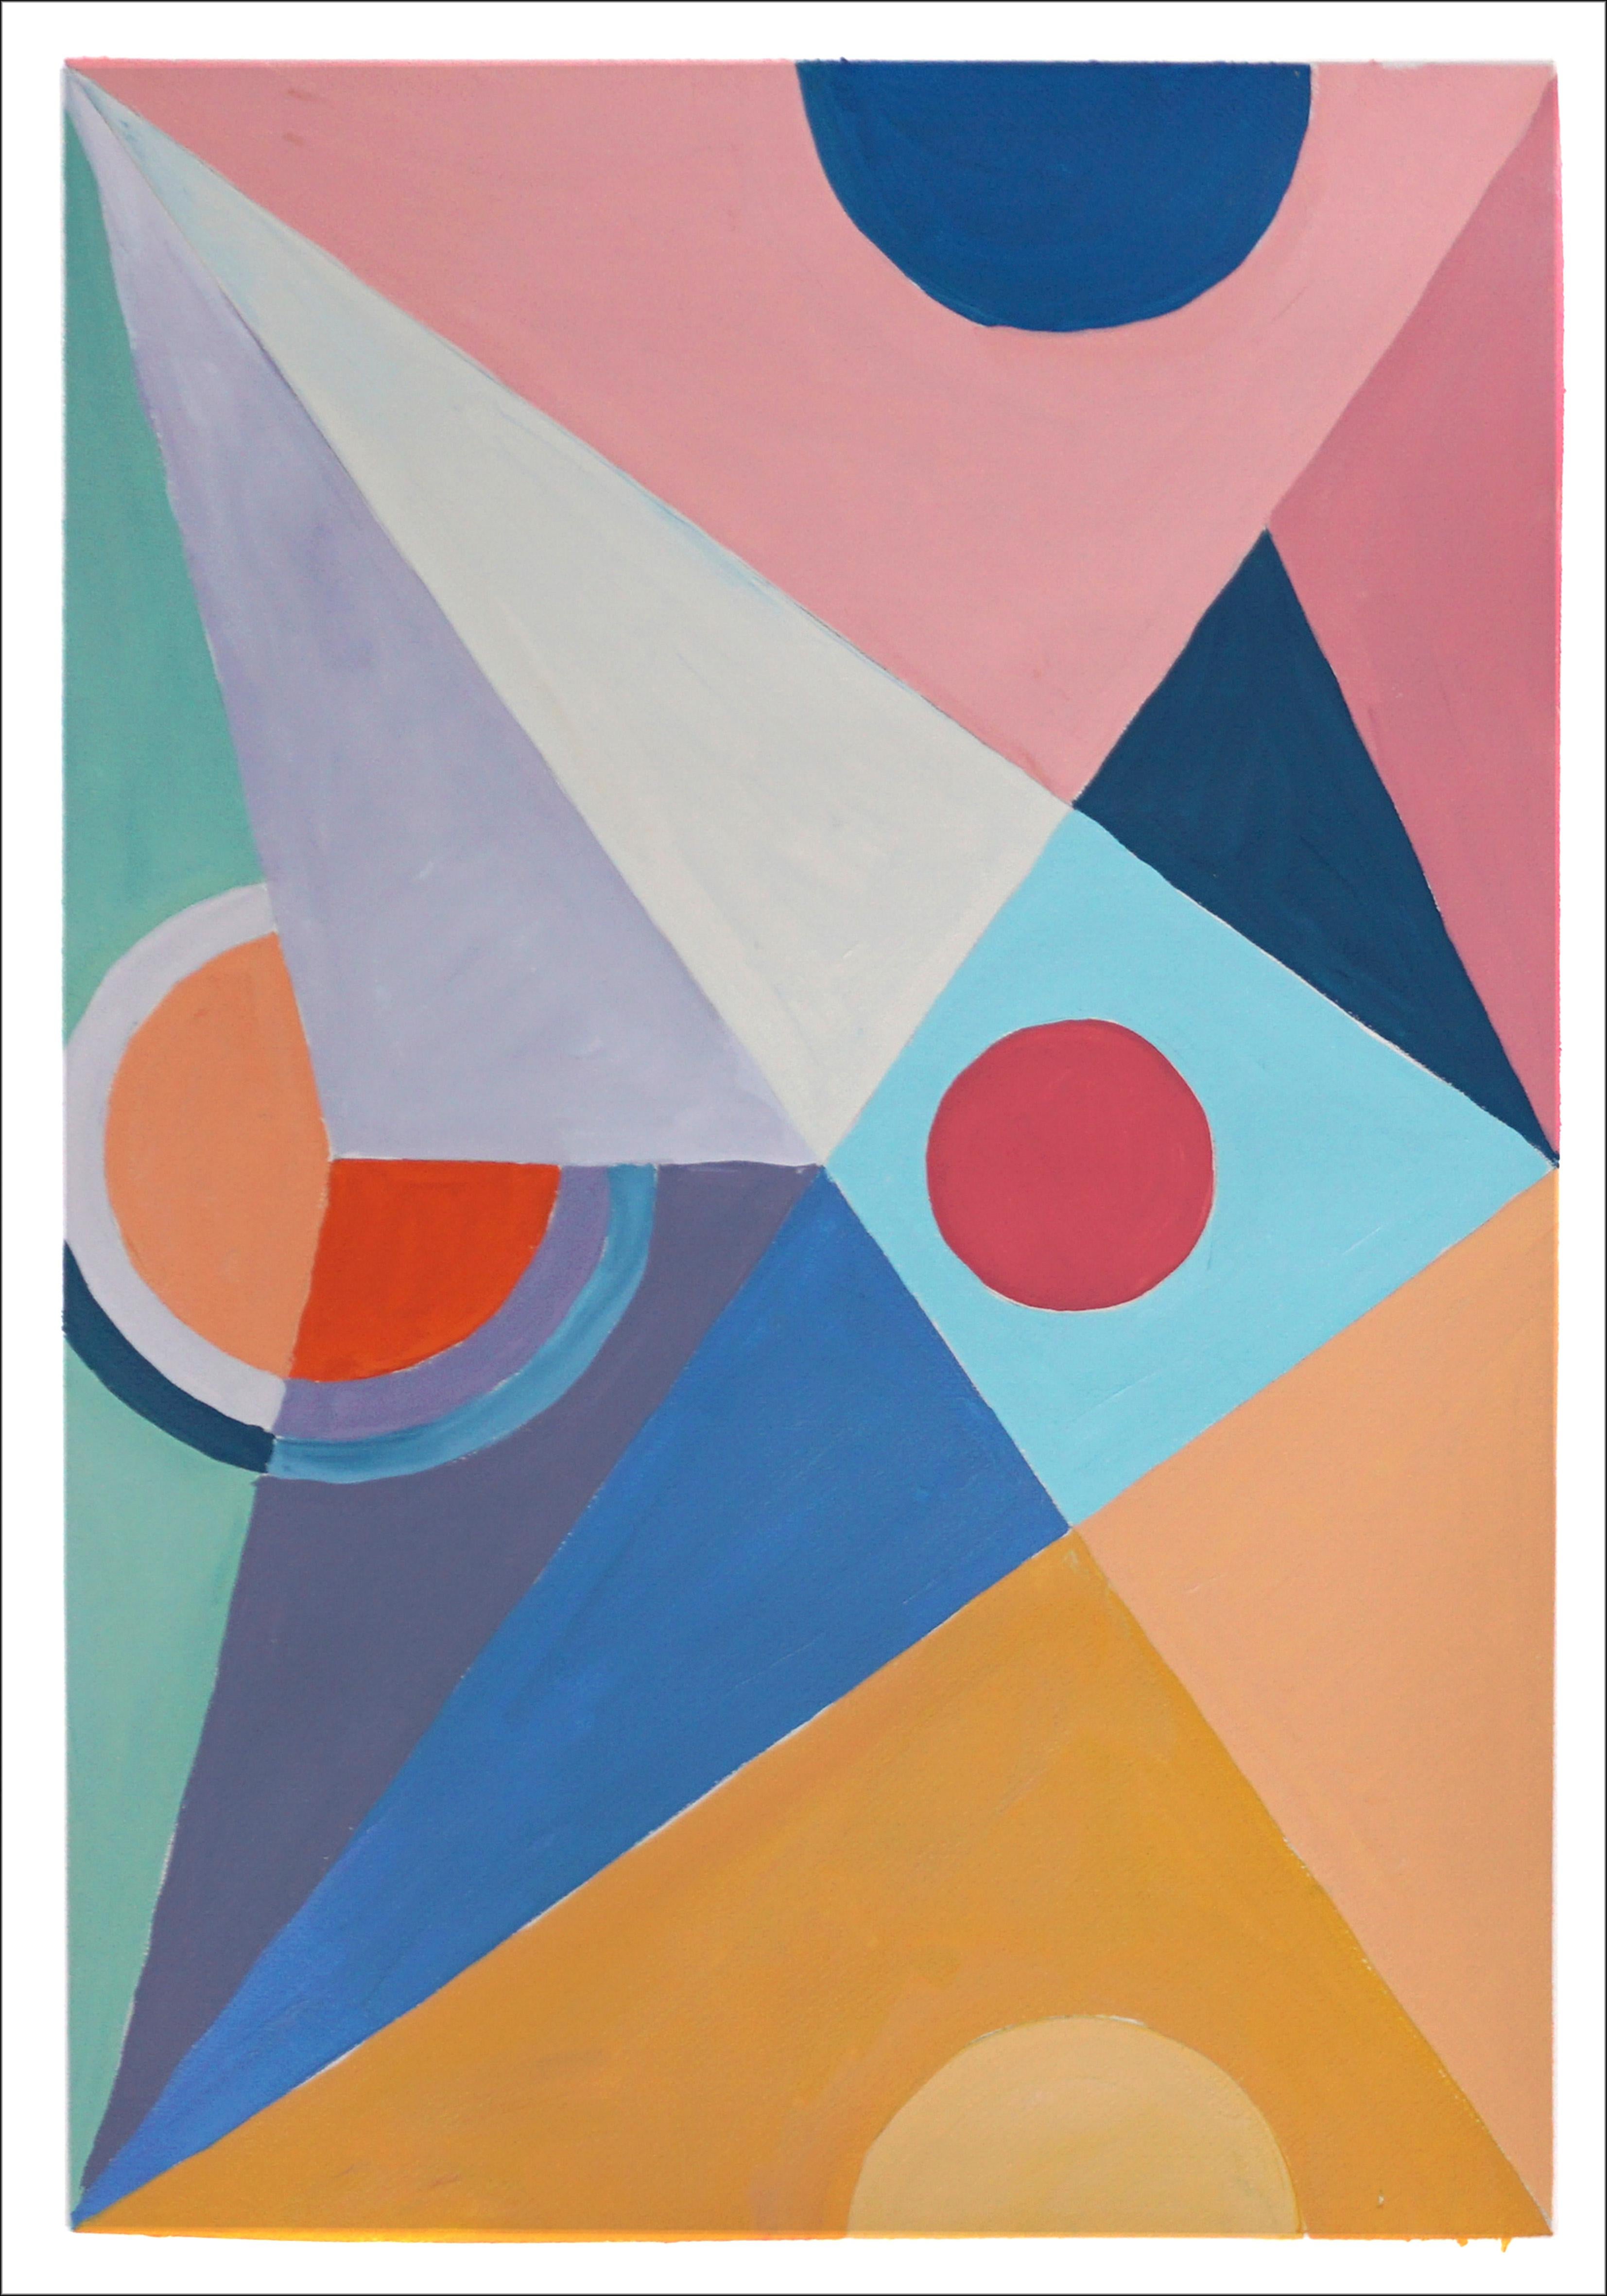 Parted Future Mirage, formes géométriques, diptyque suprématiste, jaune, gris et rose - Constructiviste Painting par Natalia Roman